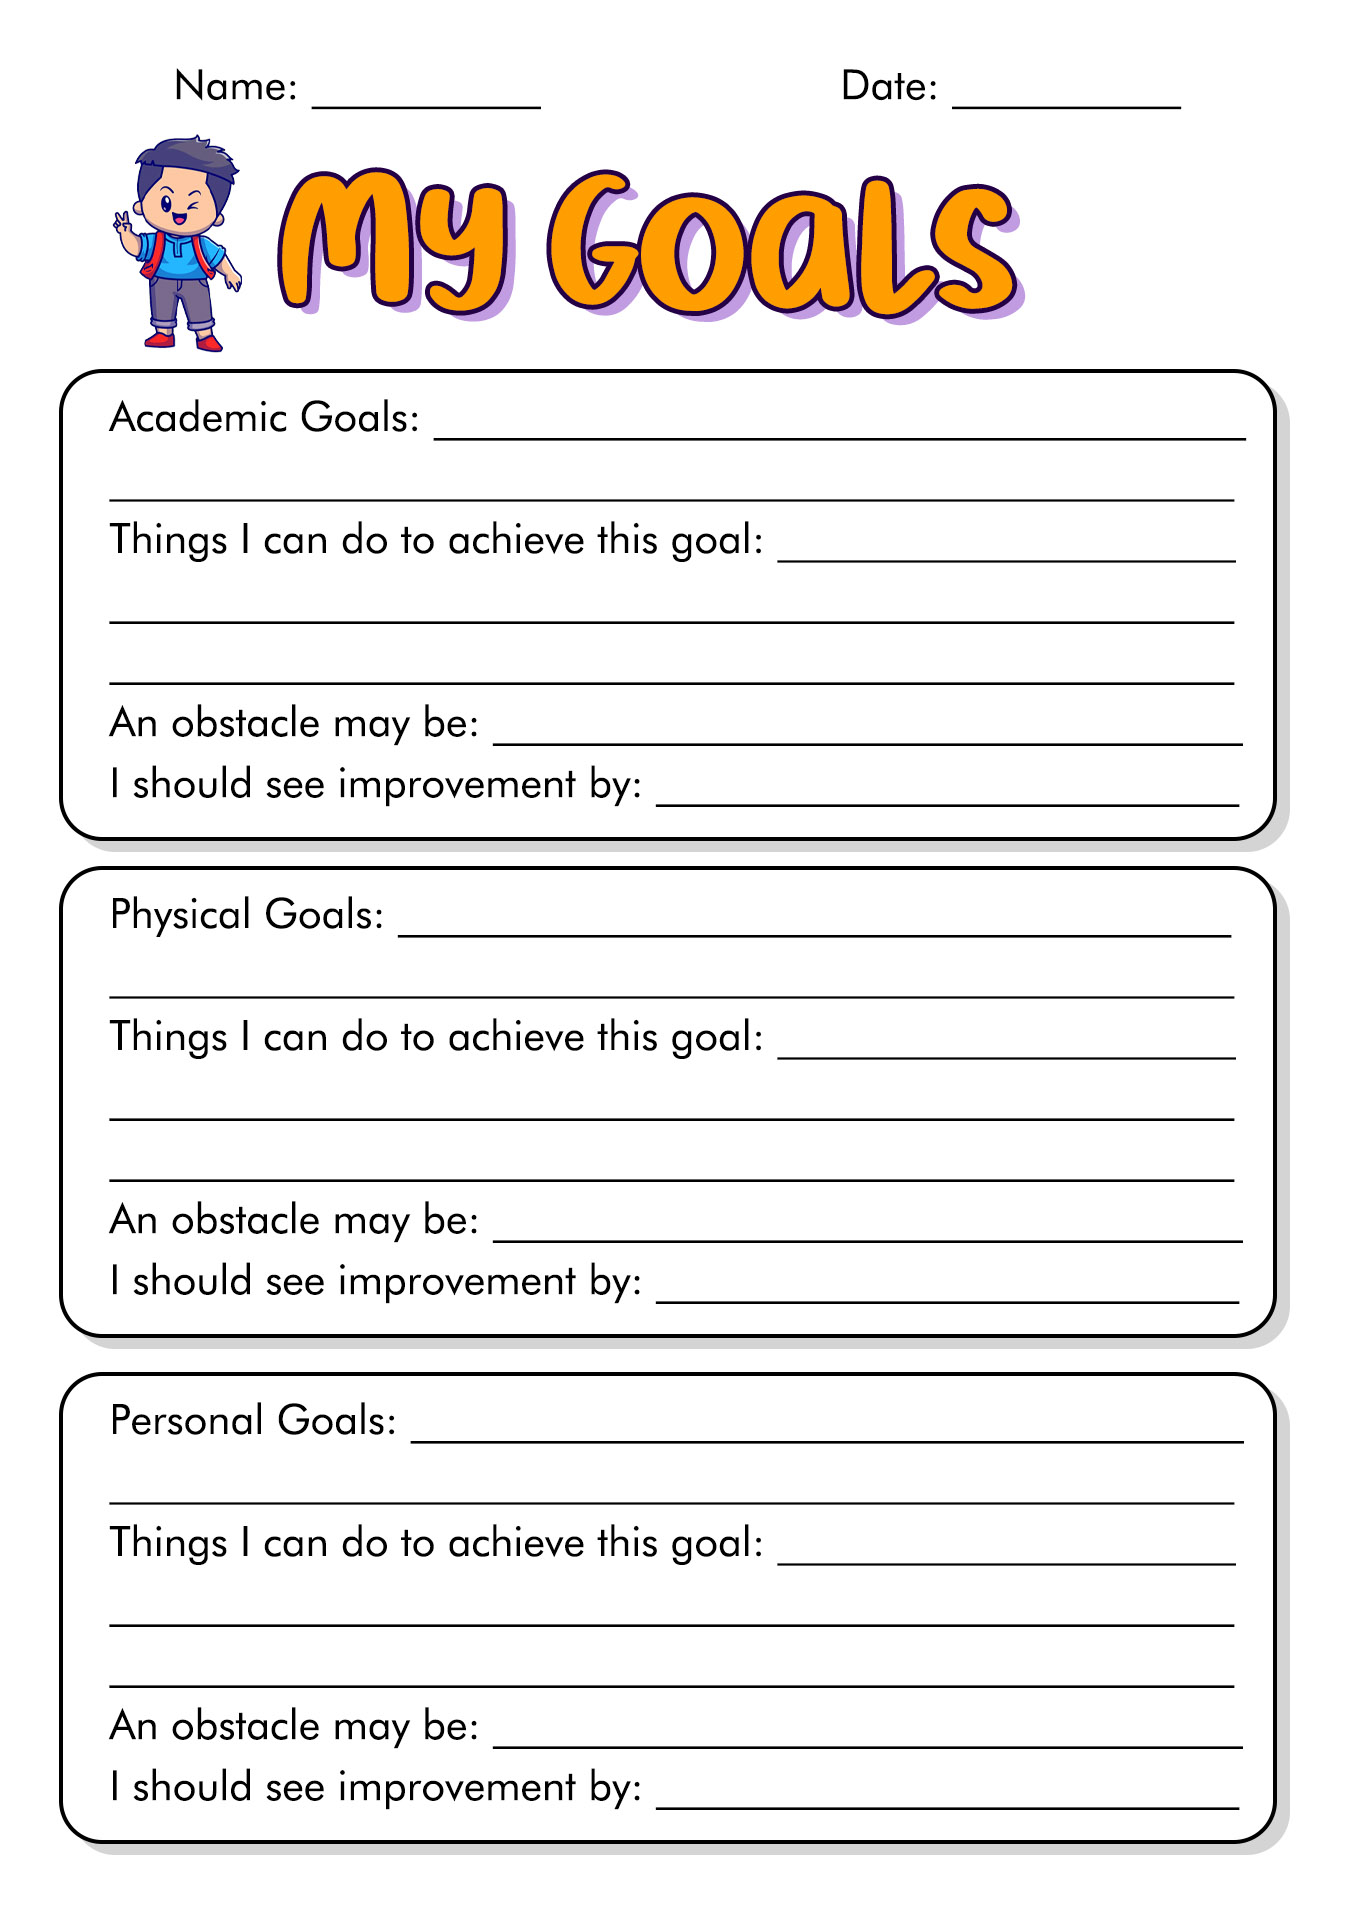 School Goals Worksheet